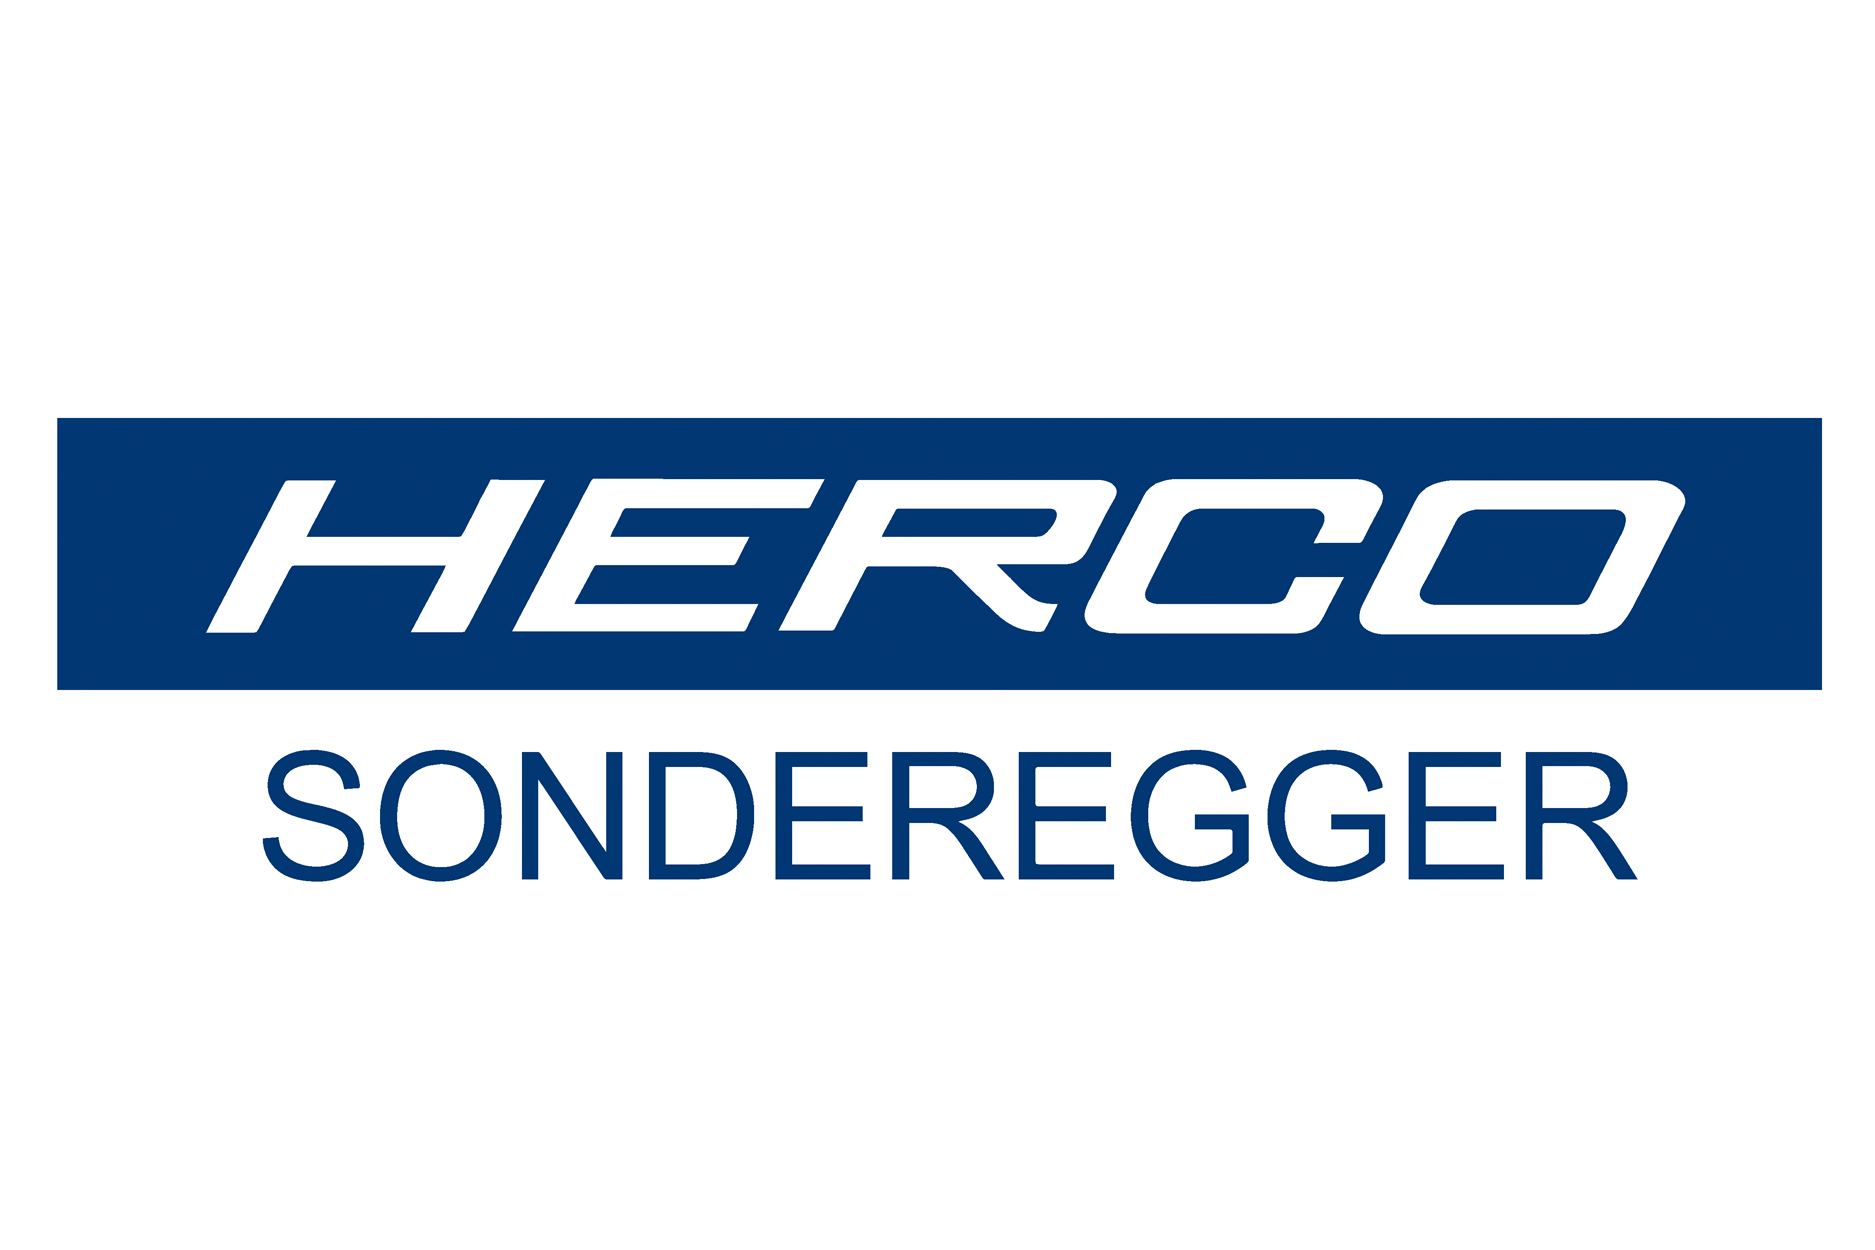 Herco Sonderegger